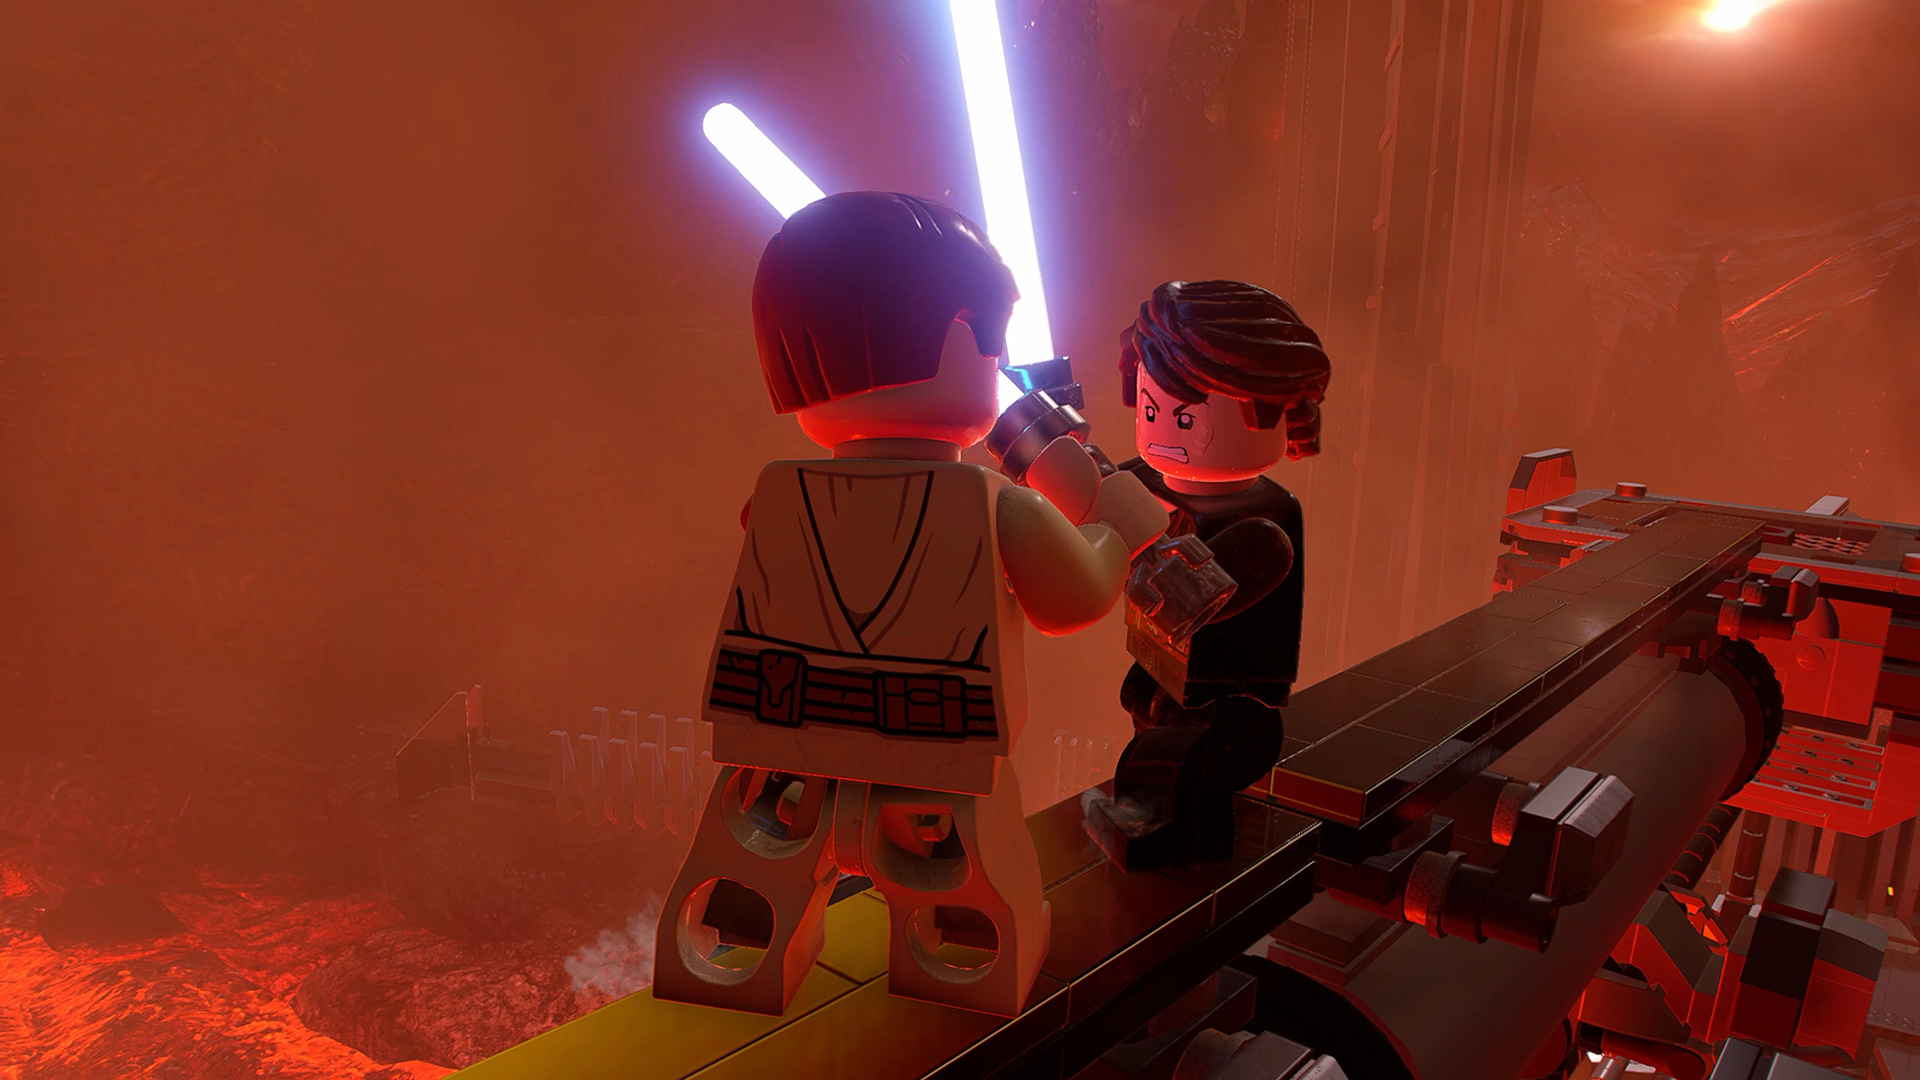 Lego Star Wars A Saga Skywalker Deluxe Edition Ps5 (Novo) (Jogo